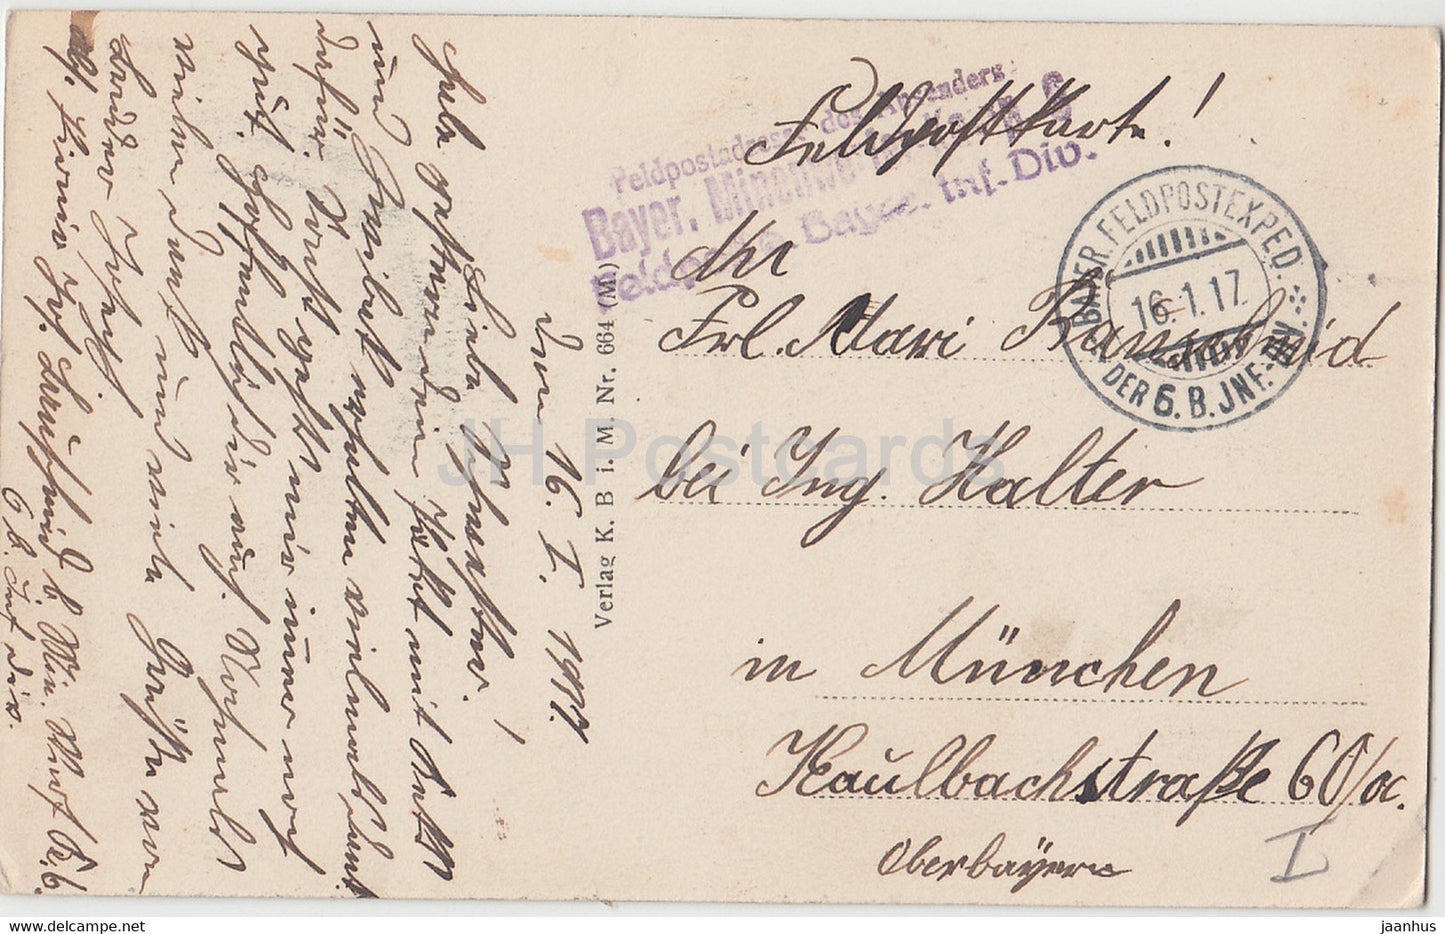 Kirche v Belloy - Bayer Minenwerfer Korp - Feldpost - old postcard - 1917 - France - used